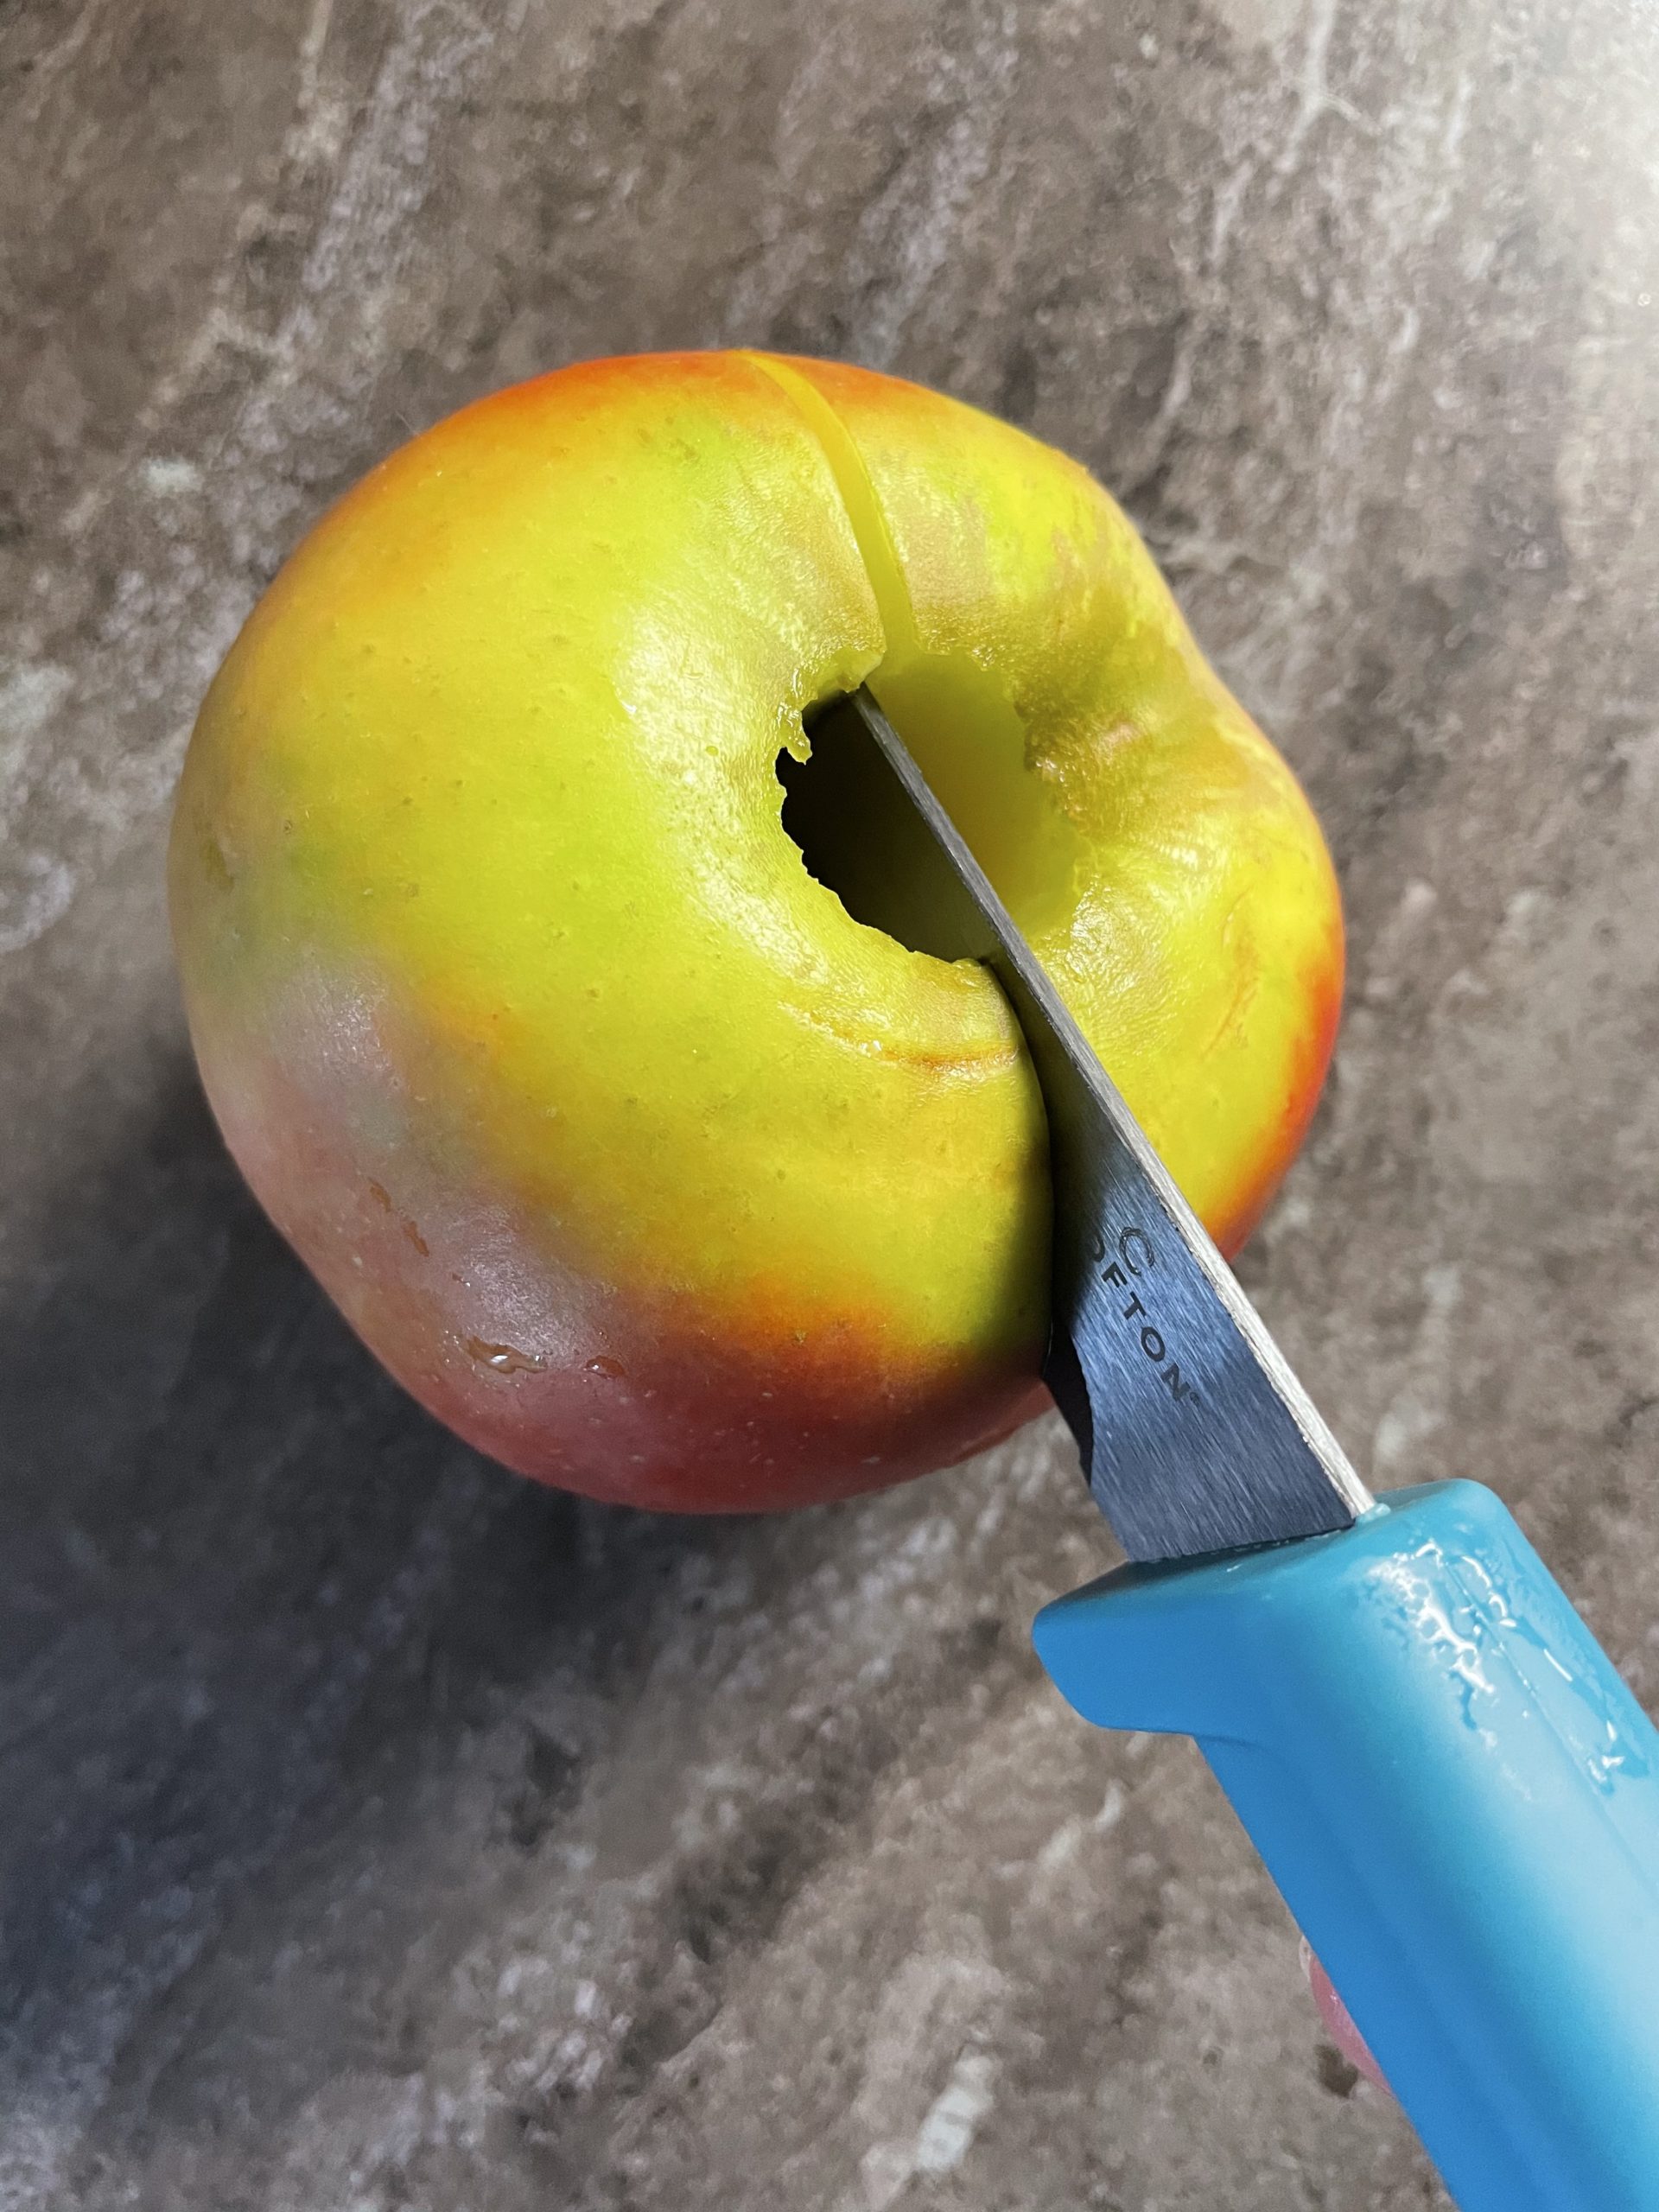 Bild zum Schritt 3 für das Bastel- und DIY-Abenteuer für Kinder: 'Dann schneidet ihr den Apfel in der Mitte durch.'